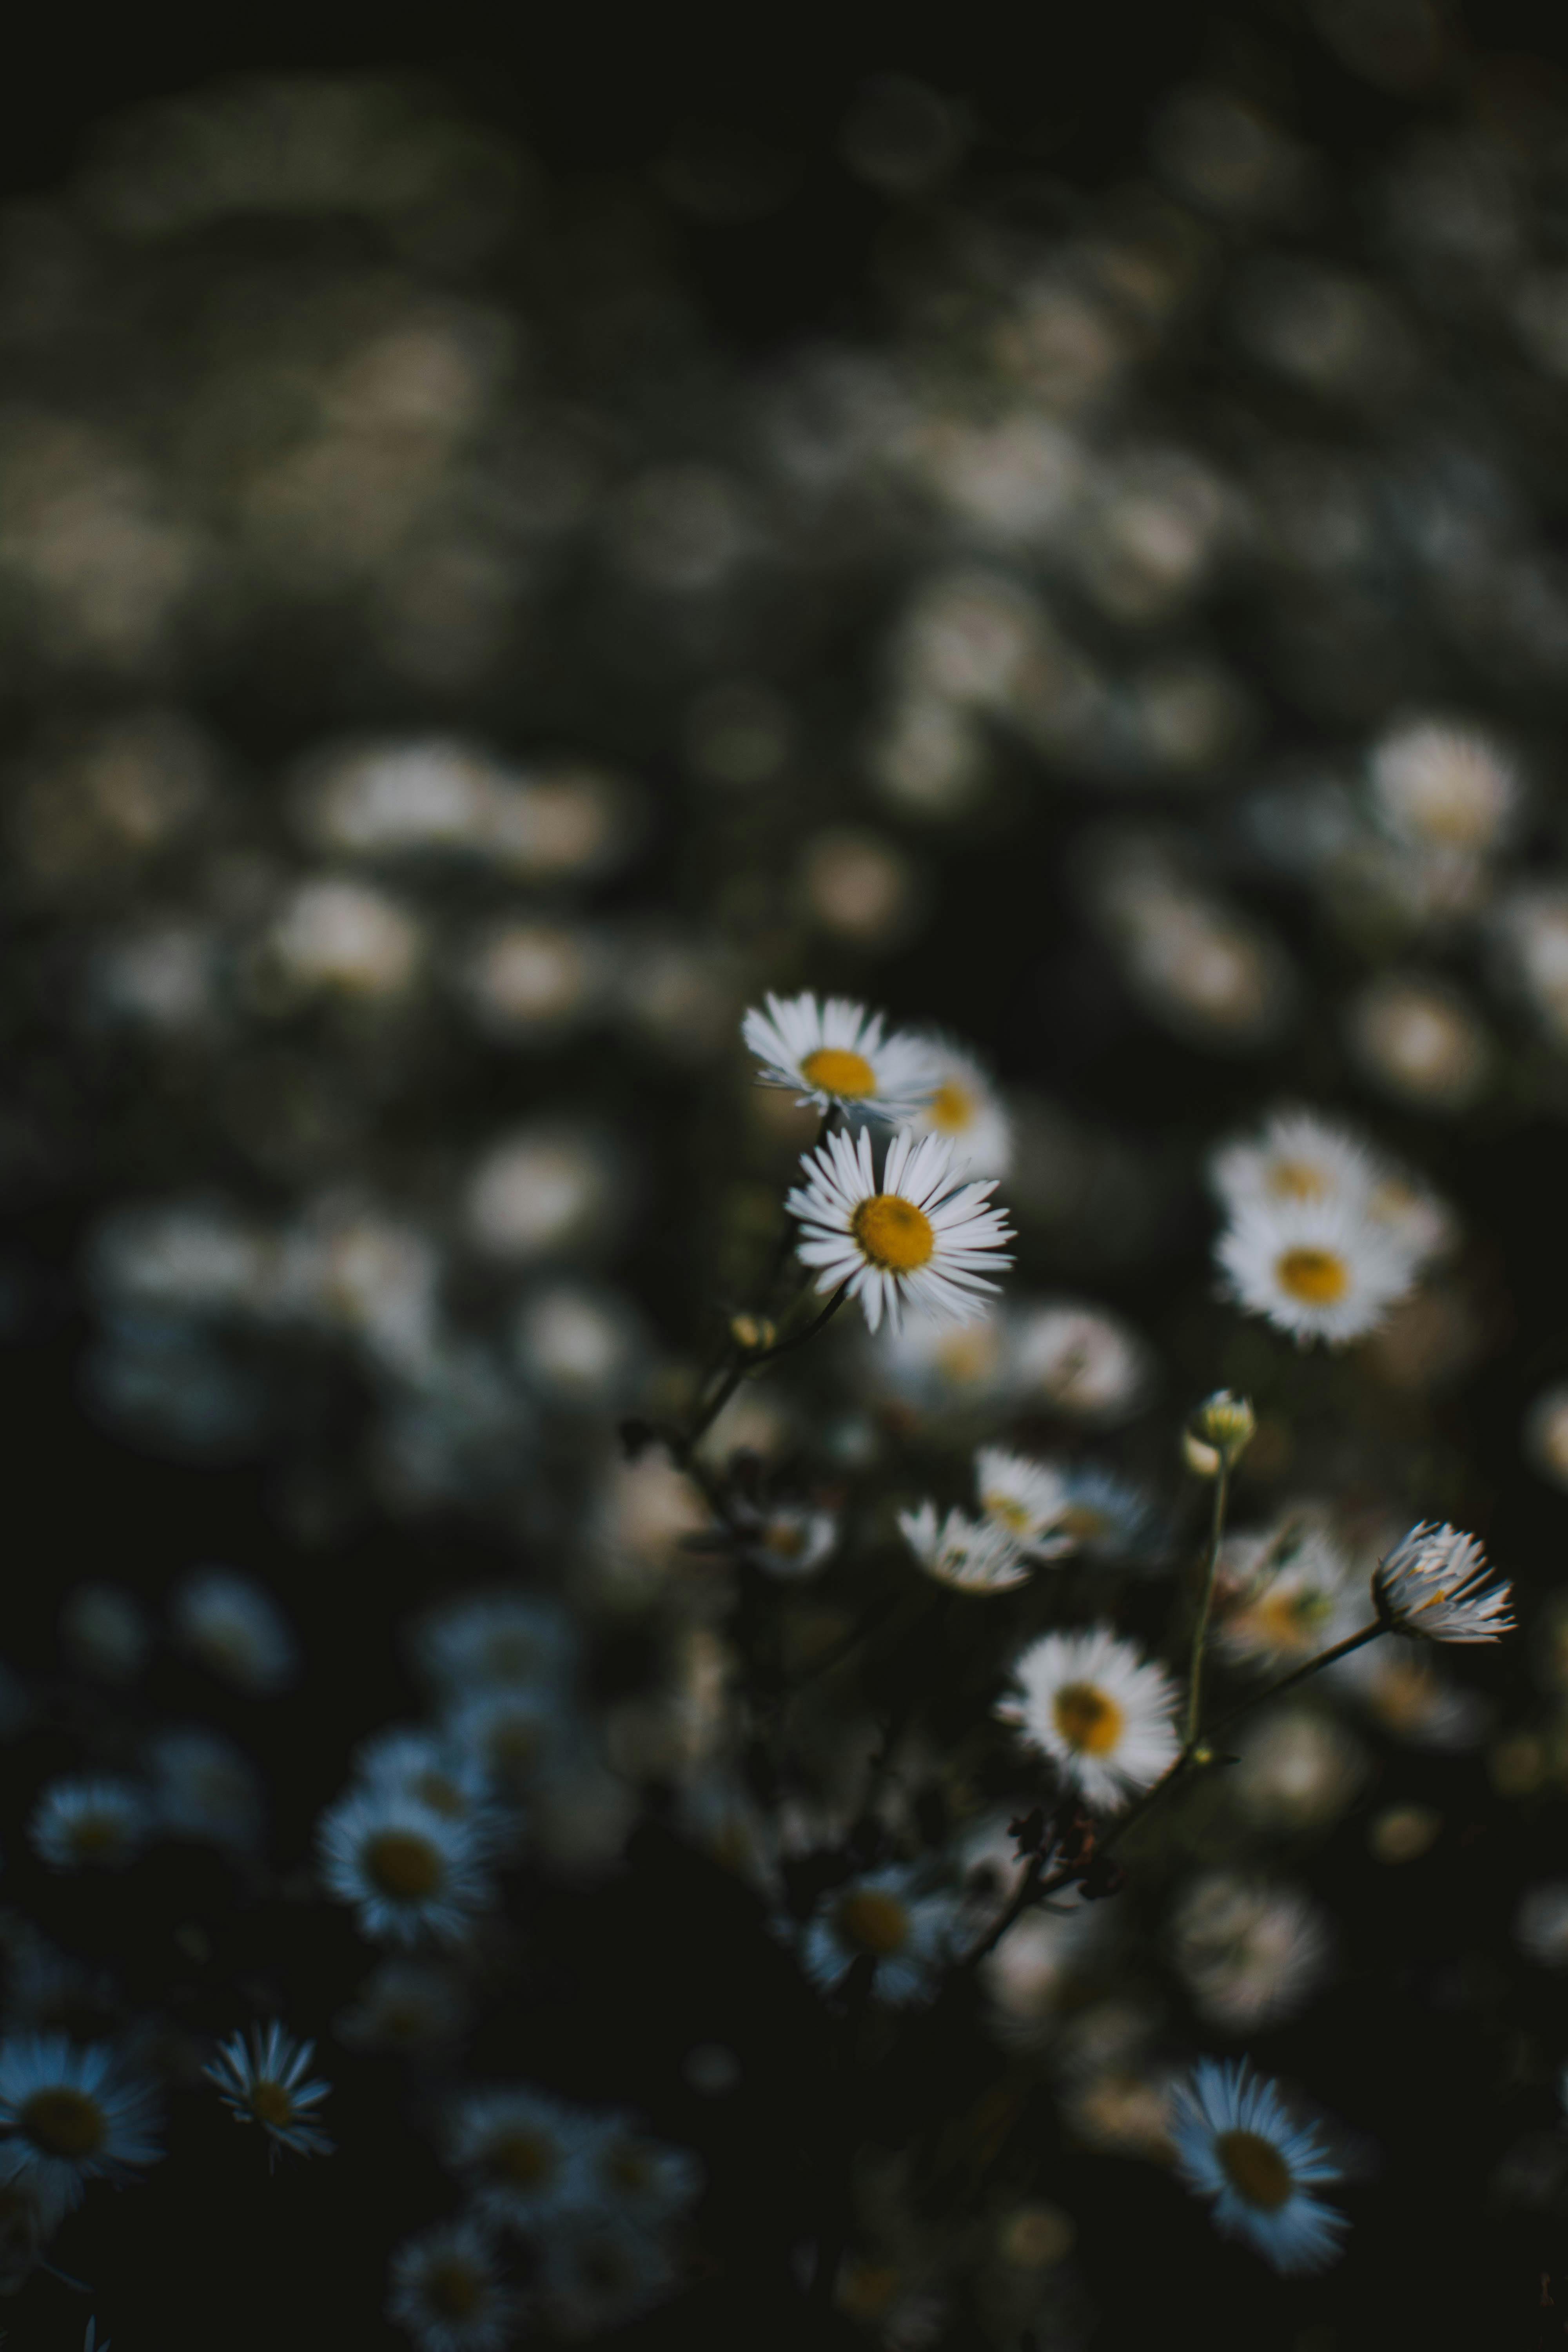 Hãy viết ngay tên bạn trên mạng xã hội Pinterest, để xem những bức ảnh đẹp nhất về hoa cúc trắng. Hình ảnh này sẽ khiến bạn cảm thấy bình yên và thư thái, như được đắm mình trong cánh đồng hoa thơm ngát và tràn ngập nắng.